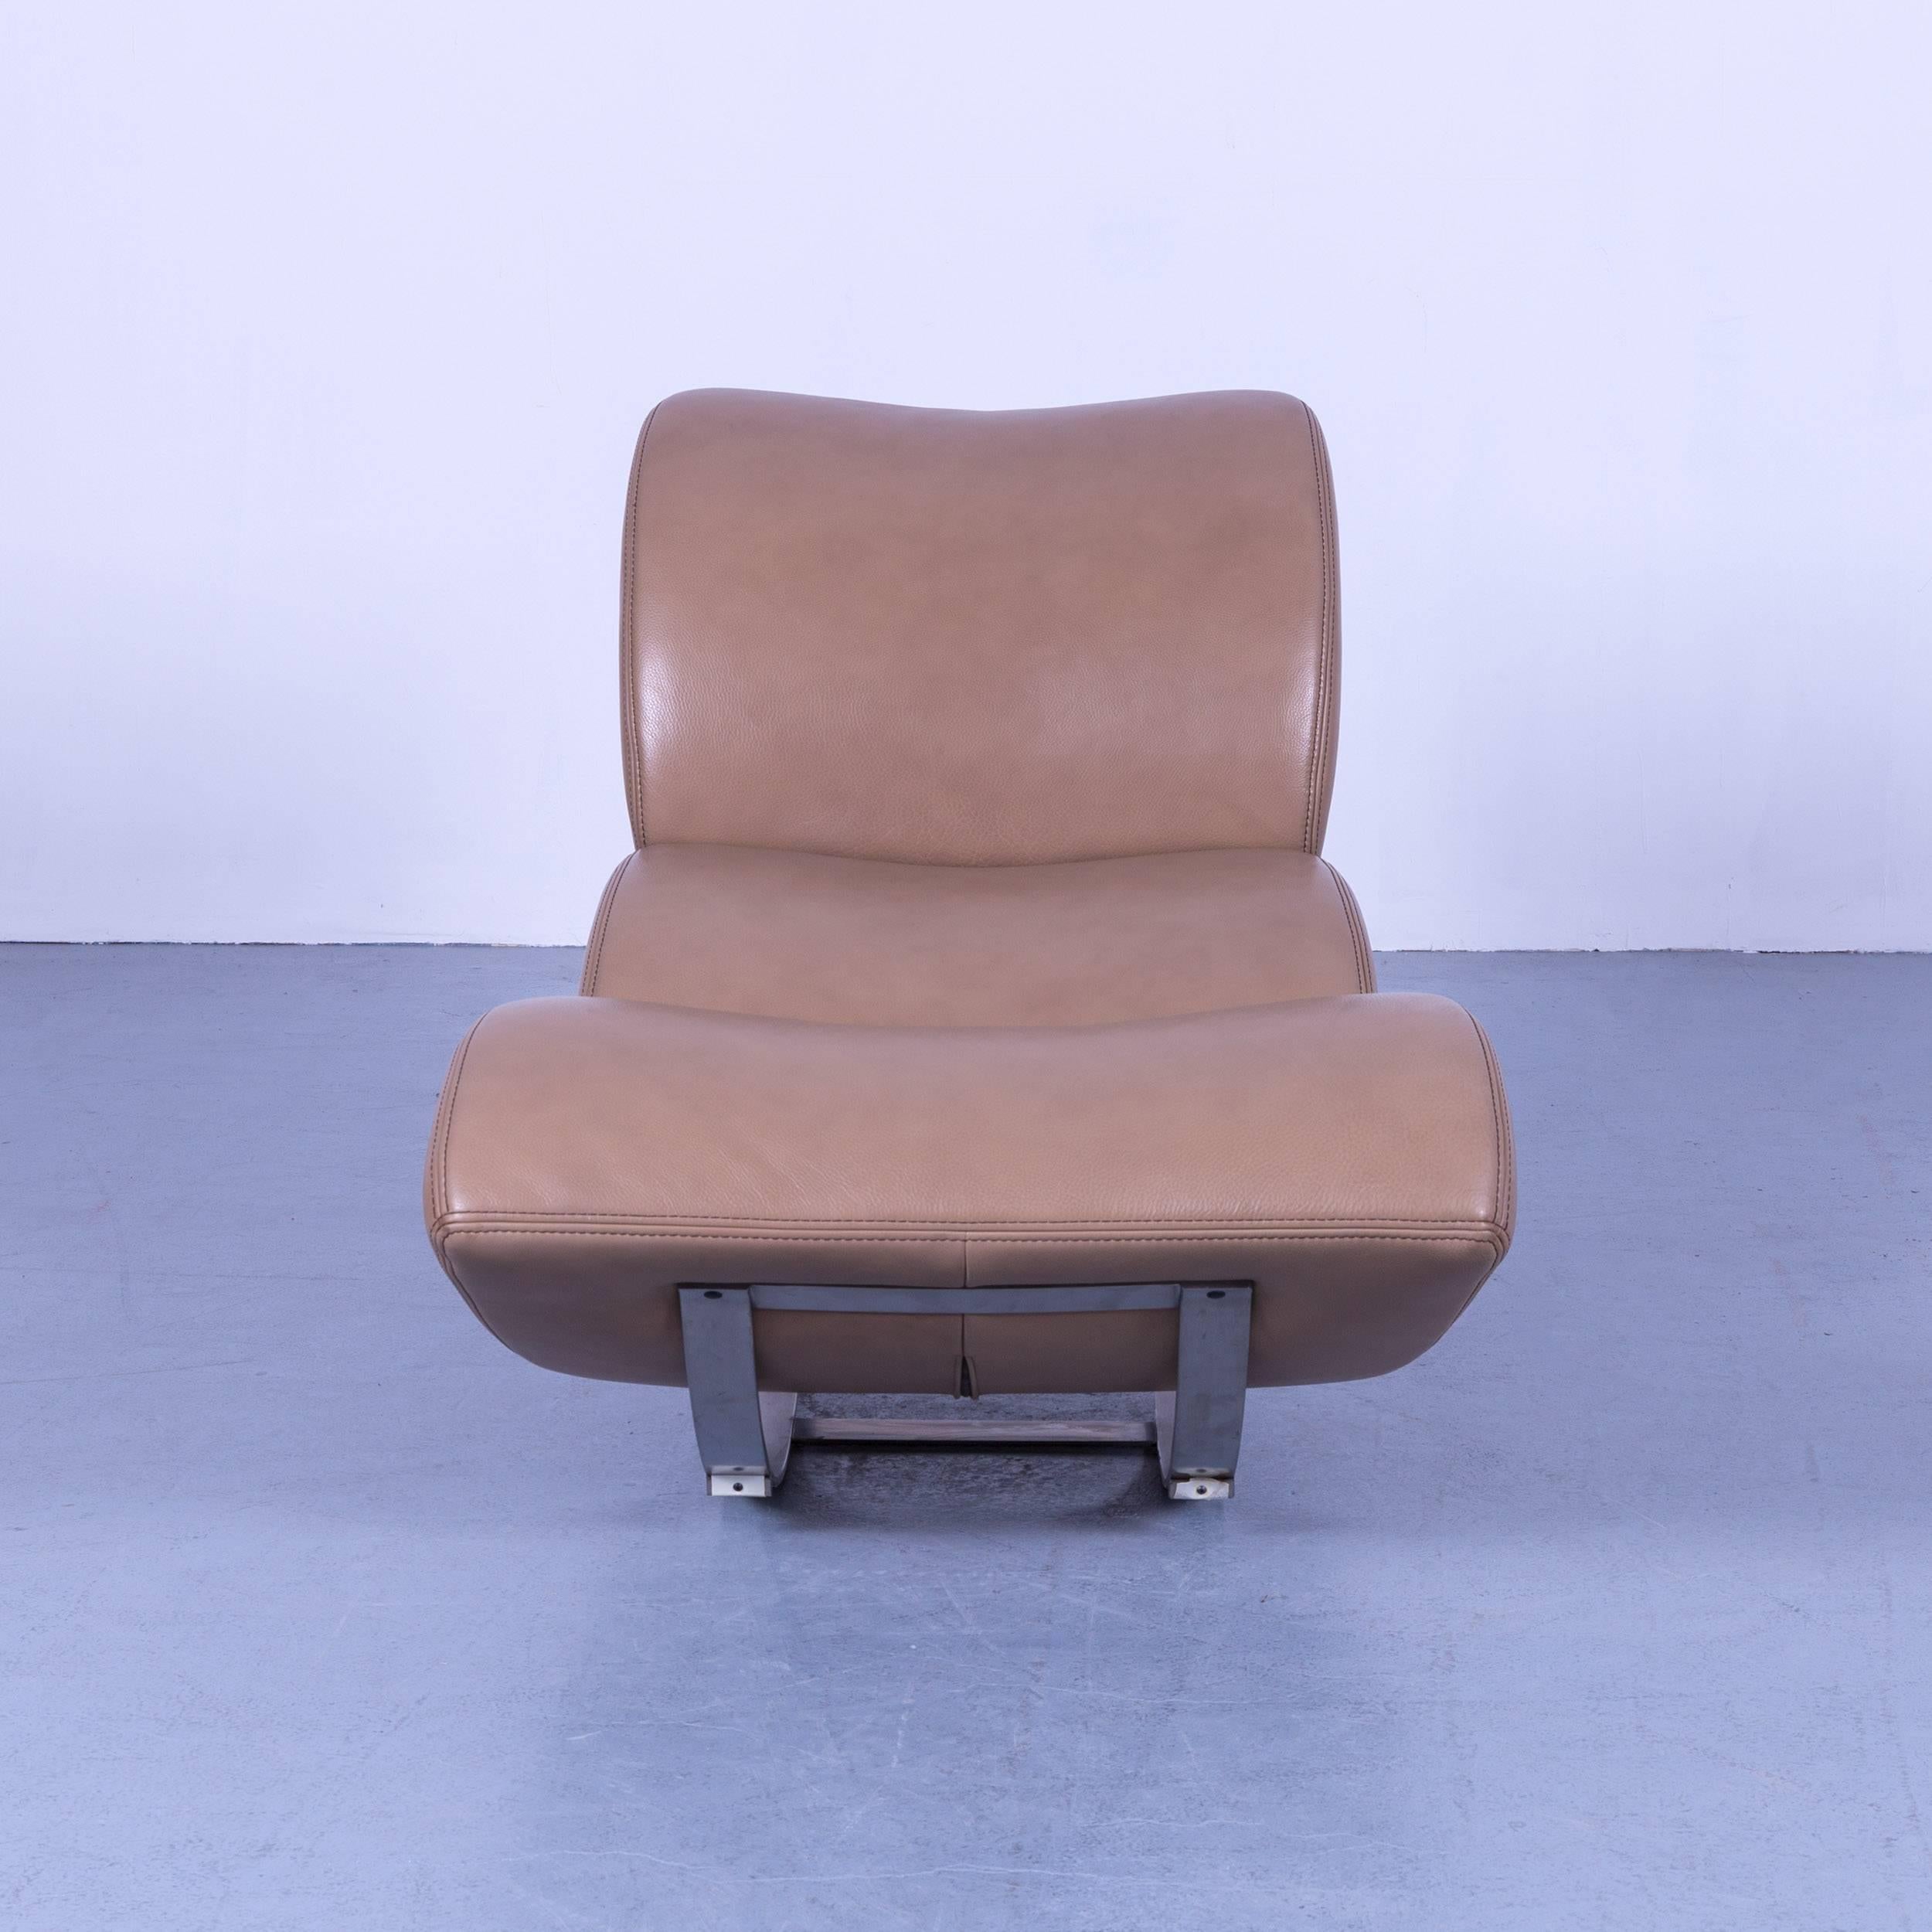 Koinor Jetlag Designer-Schaukelstuhl in beige-crèmefarbenem Leder mit einem Sitz und Metallgestell, mit praktischen Funktionen, die für puren Komfort und Flexibilität sorgen.